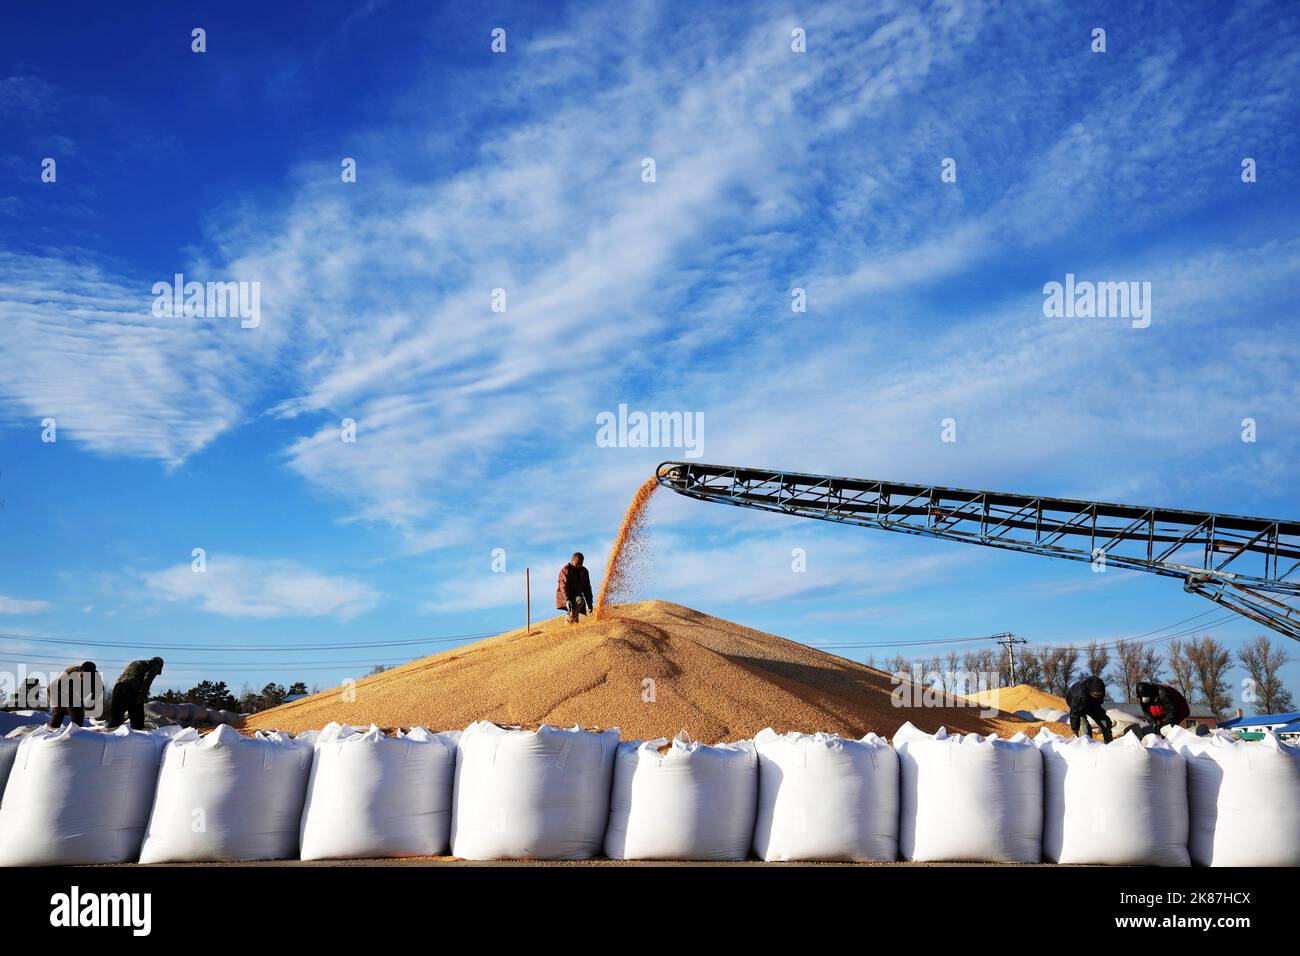 Harbin, Chinas Provinz Heilongjiang. 19. Oktober 2022. Ein Mitarbeiter arbeitet auf einem Stapel von Hühneraugen in einem Trockenhof in bei'an, nordöstlich der Provinz Heilongjiang, am 19. Oktober 2022. Quelle: Wang Jianwei/Xinhua/Alamy Live News Stockfoto